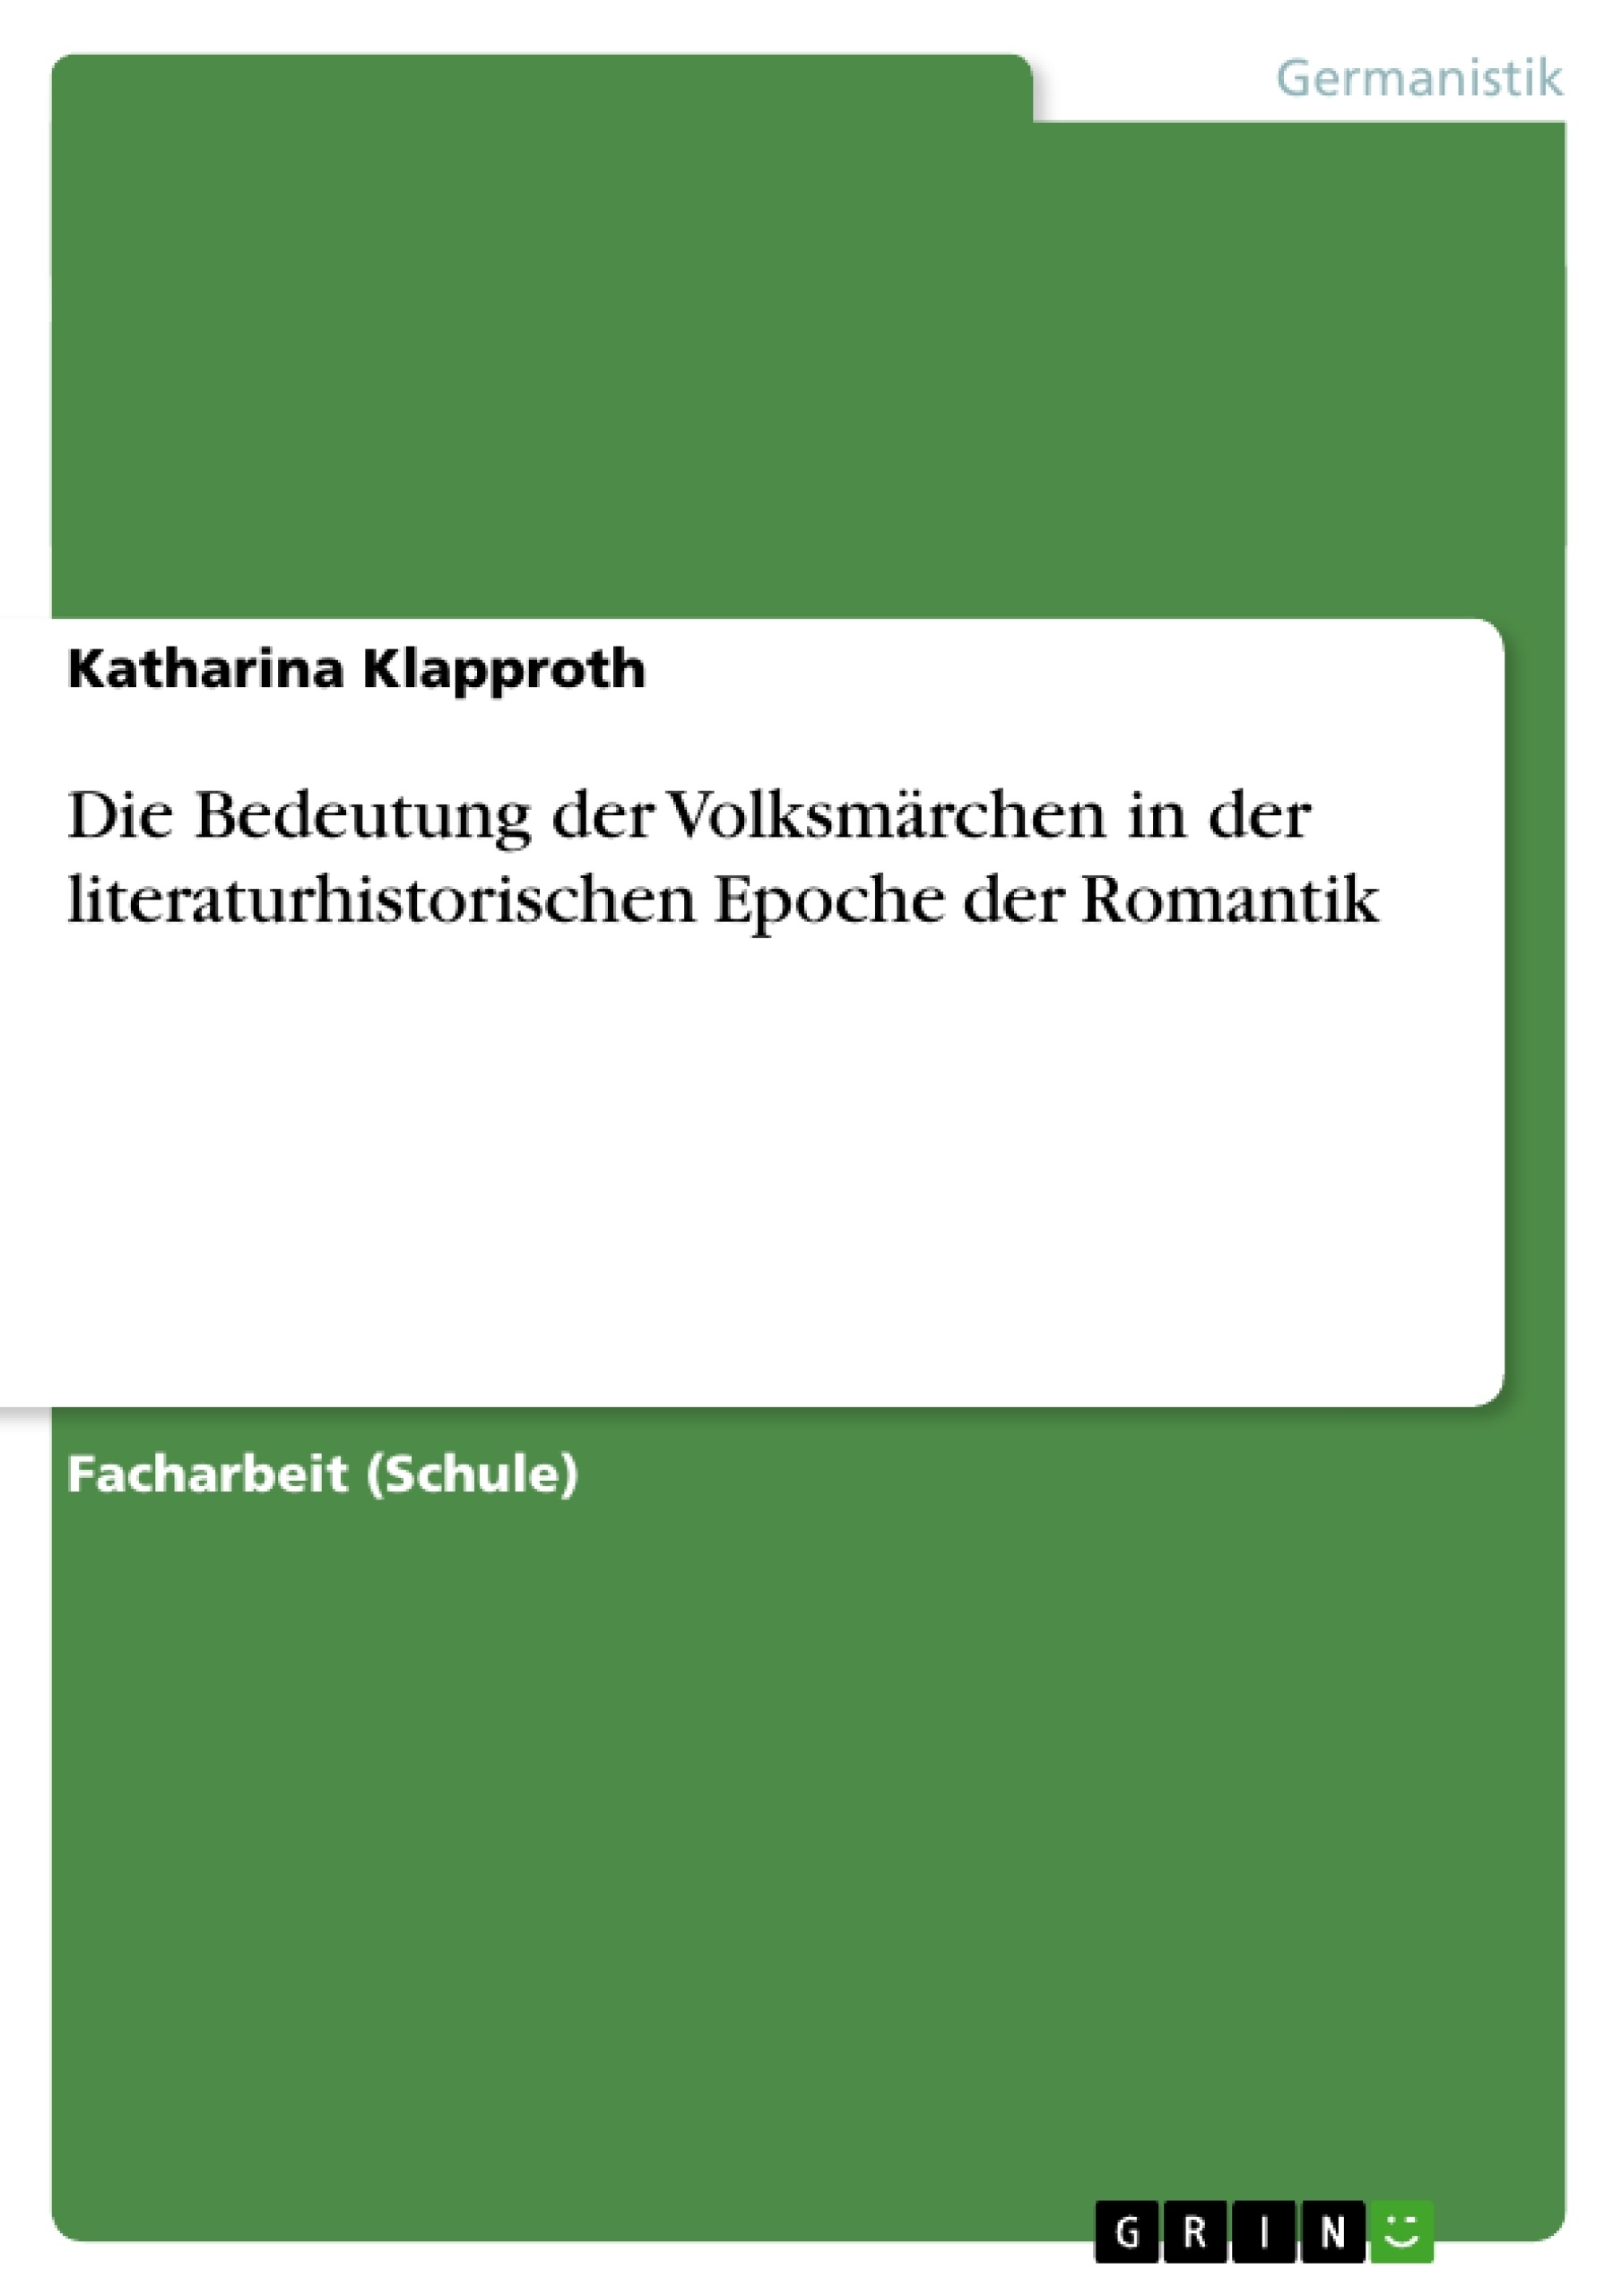 Title: Die Bedeutung der Volksmärchen in der literaturhistorischen Epoche der Romantik